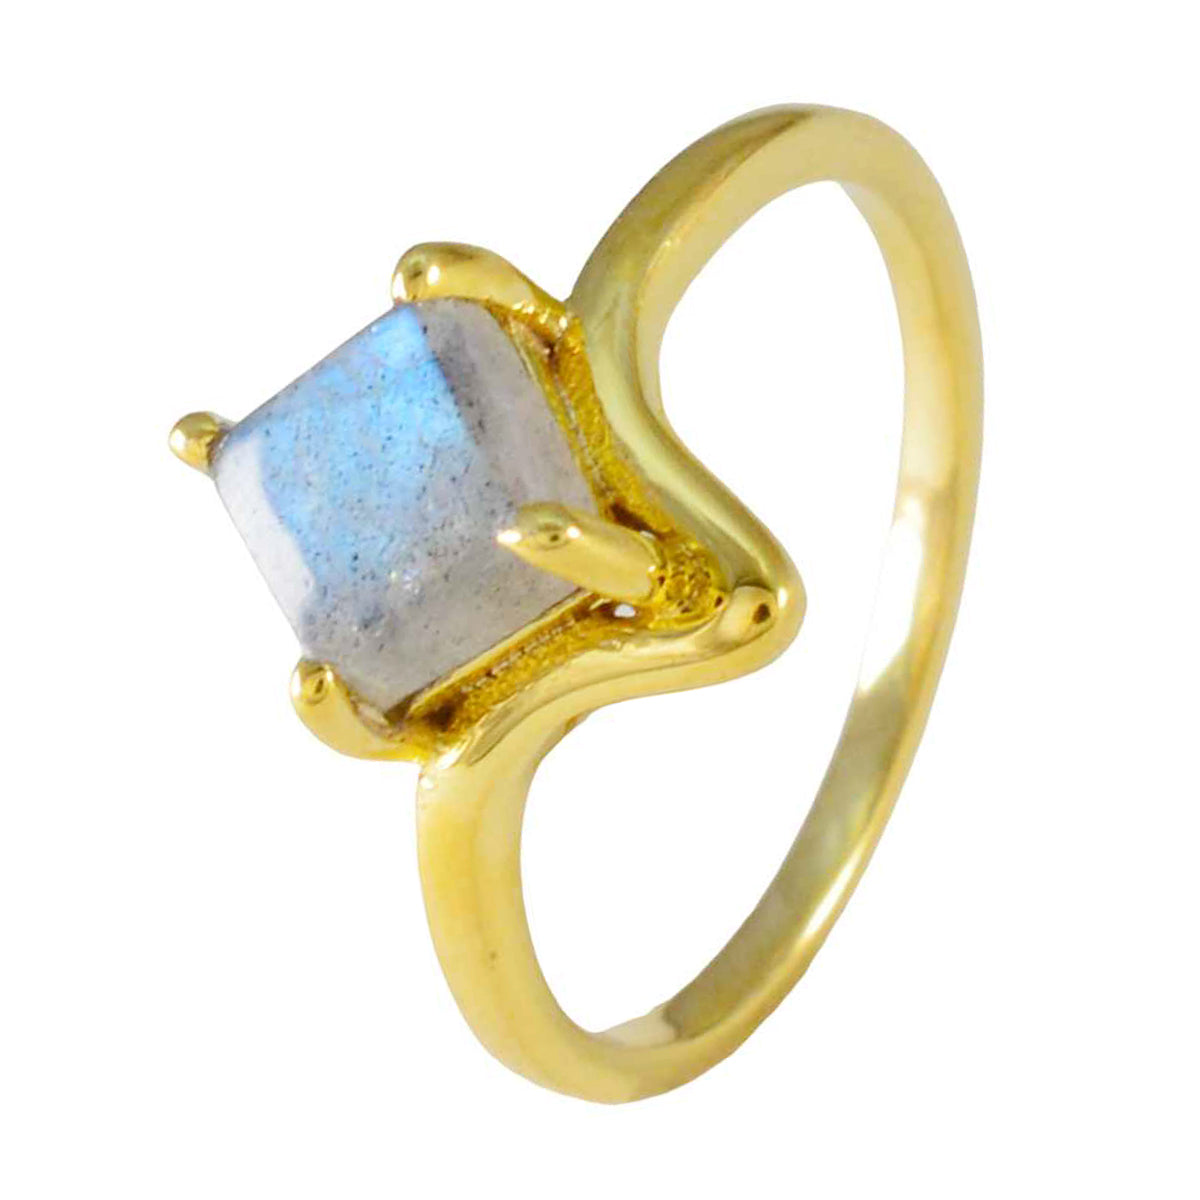 anello riyo in argento con placcatura in oro giallo, pietra labradorite, forma quadrata, montatura a punta, fede nuziale di gioielli firmati